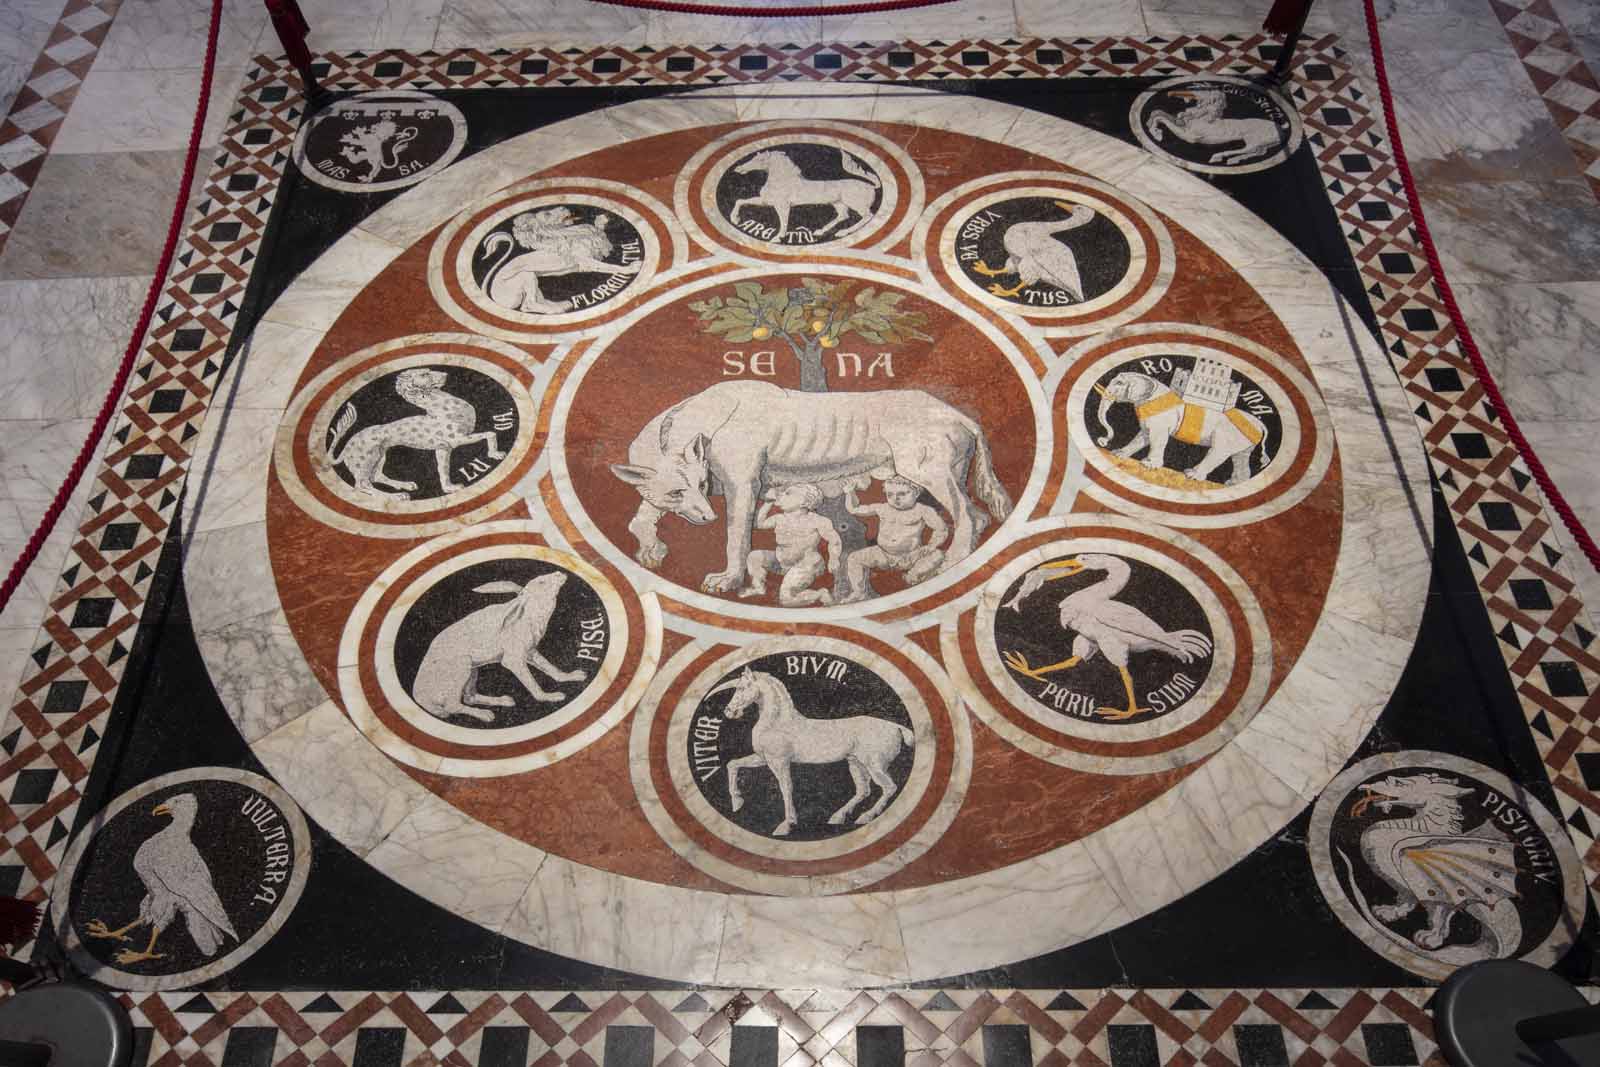 Lupa pavimento Duomo Siena